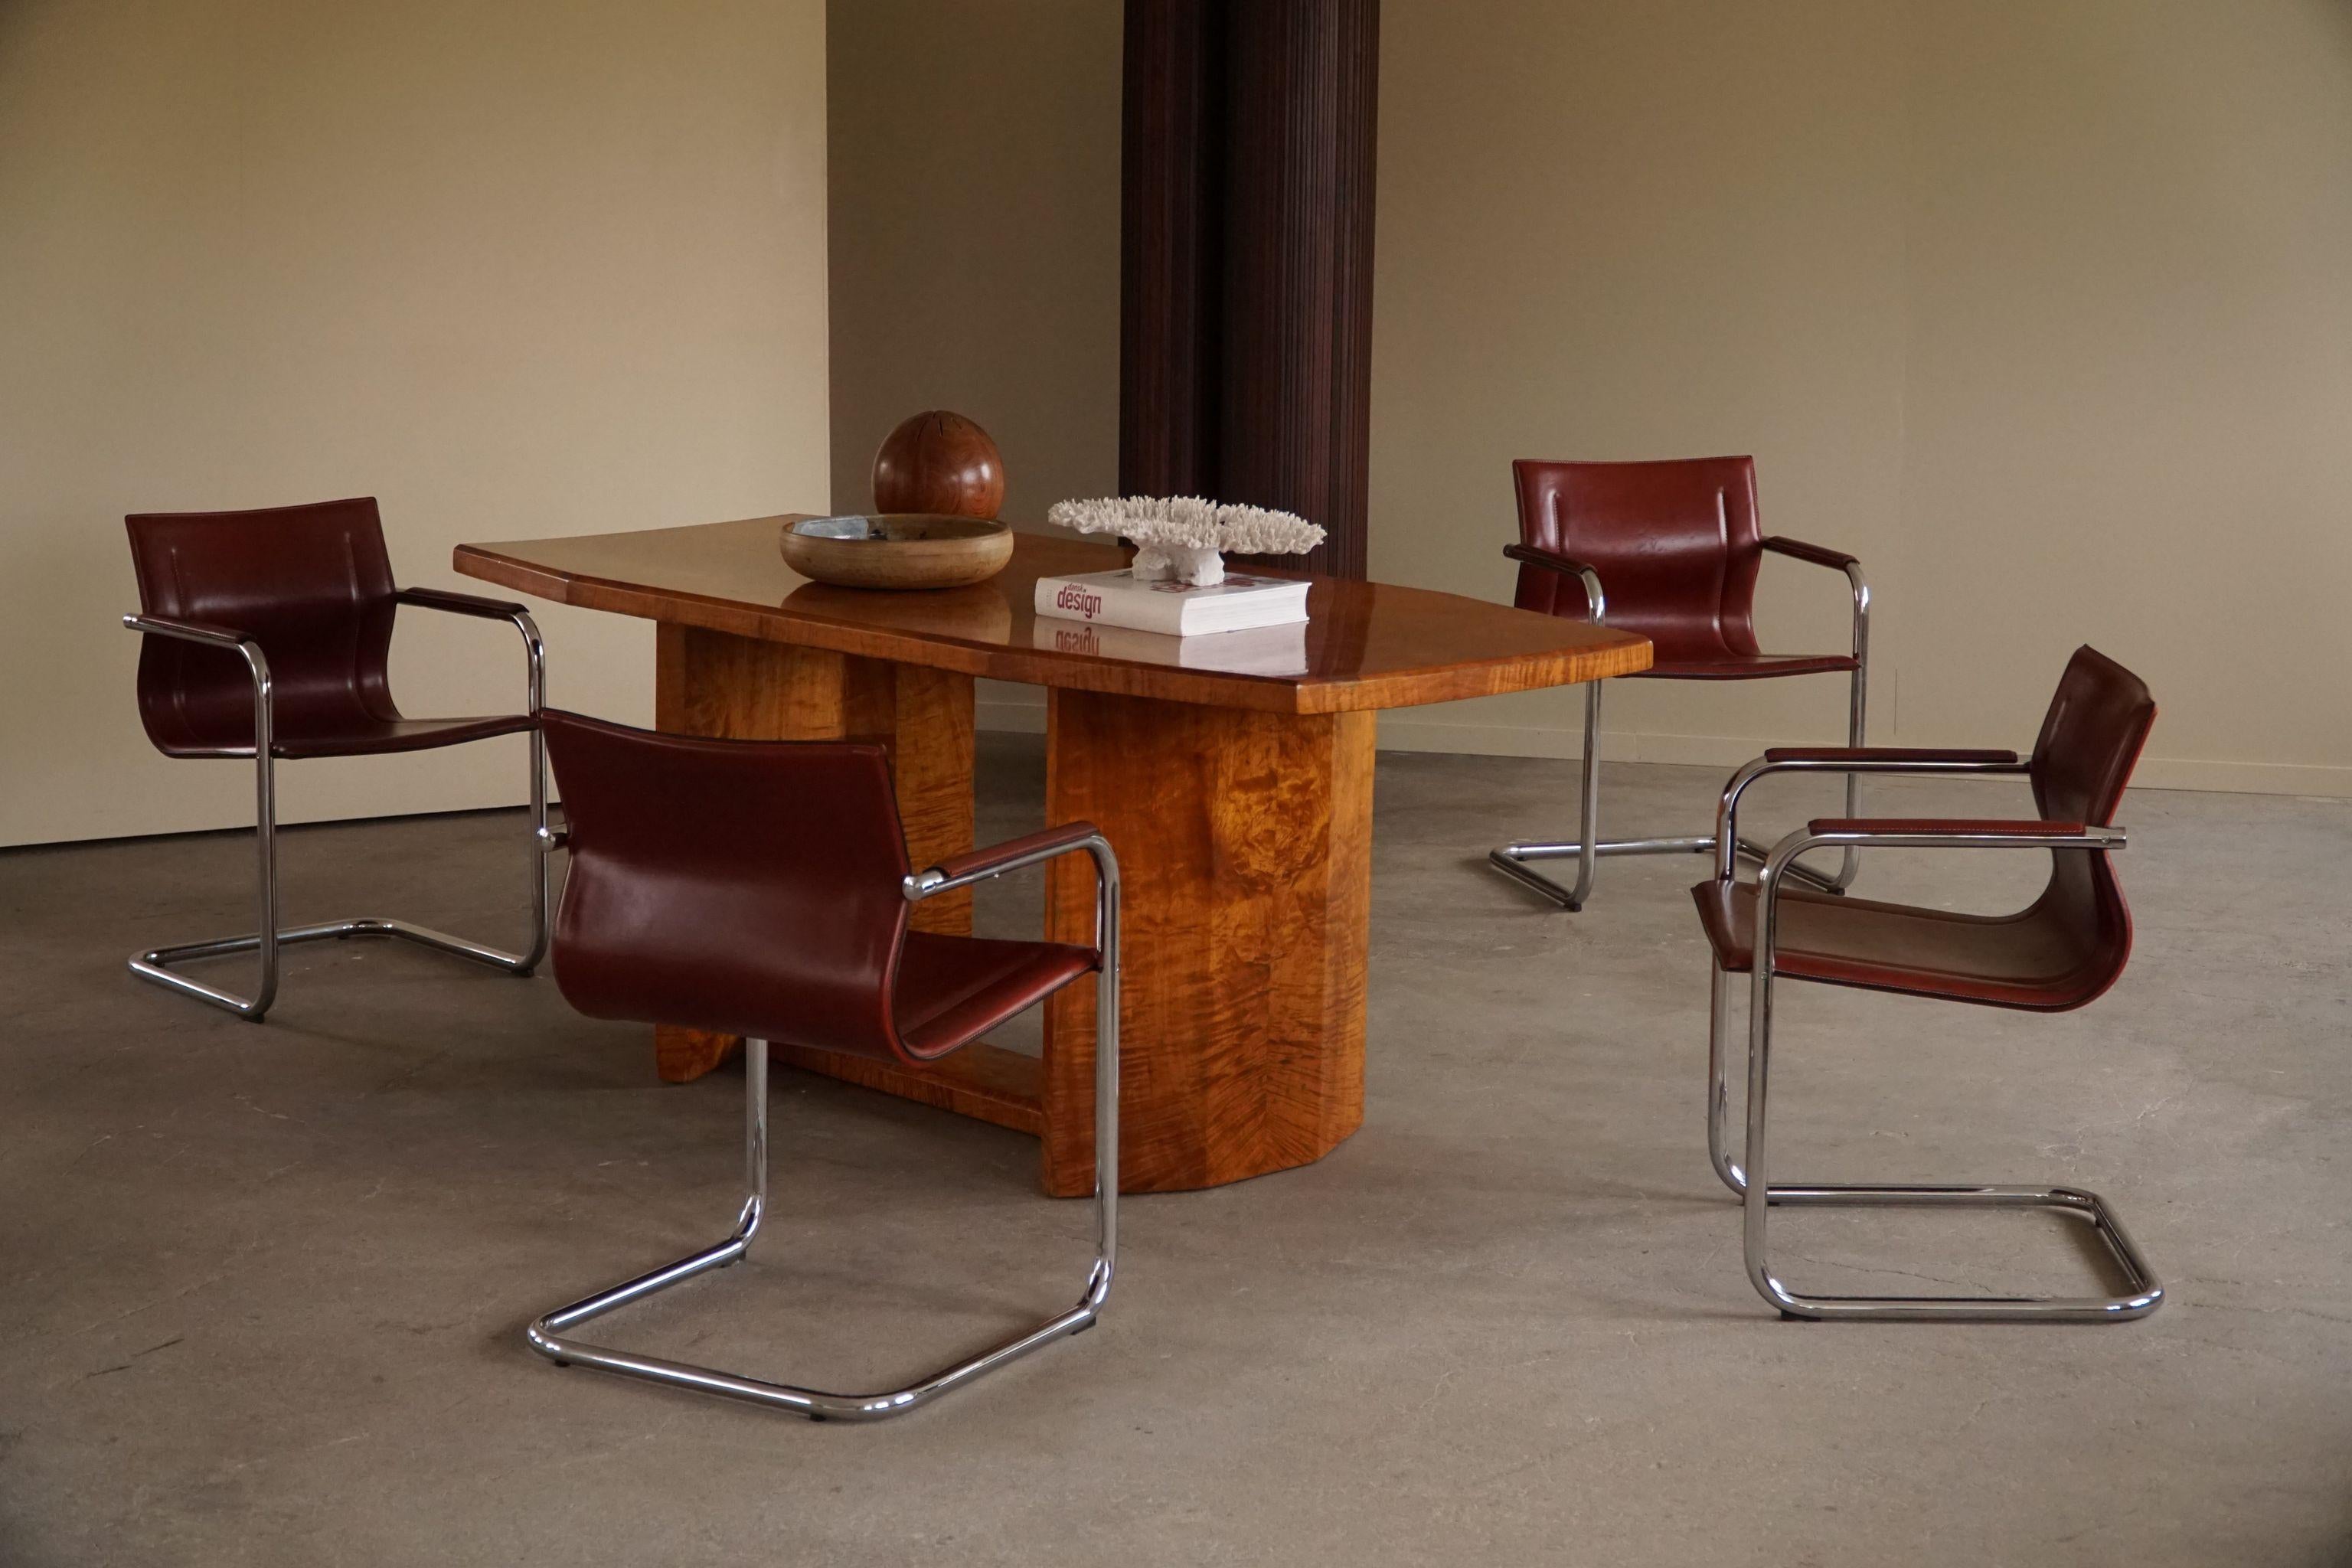 Satz von 5 Vintage Freischwinger-Sesseln in patiniertem rot / cognacfarbenem Leder von Matteo Grassi, hergestellt in Italien, 1970er Jahre. Gestempelt. Die Stühle erinnern stark an die Bauhaus-Arbeiten von Mart Stam und Marcel Breuer. 

Ein